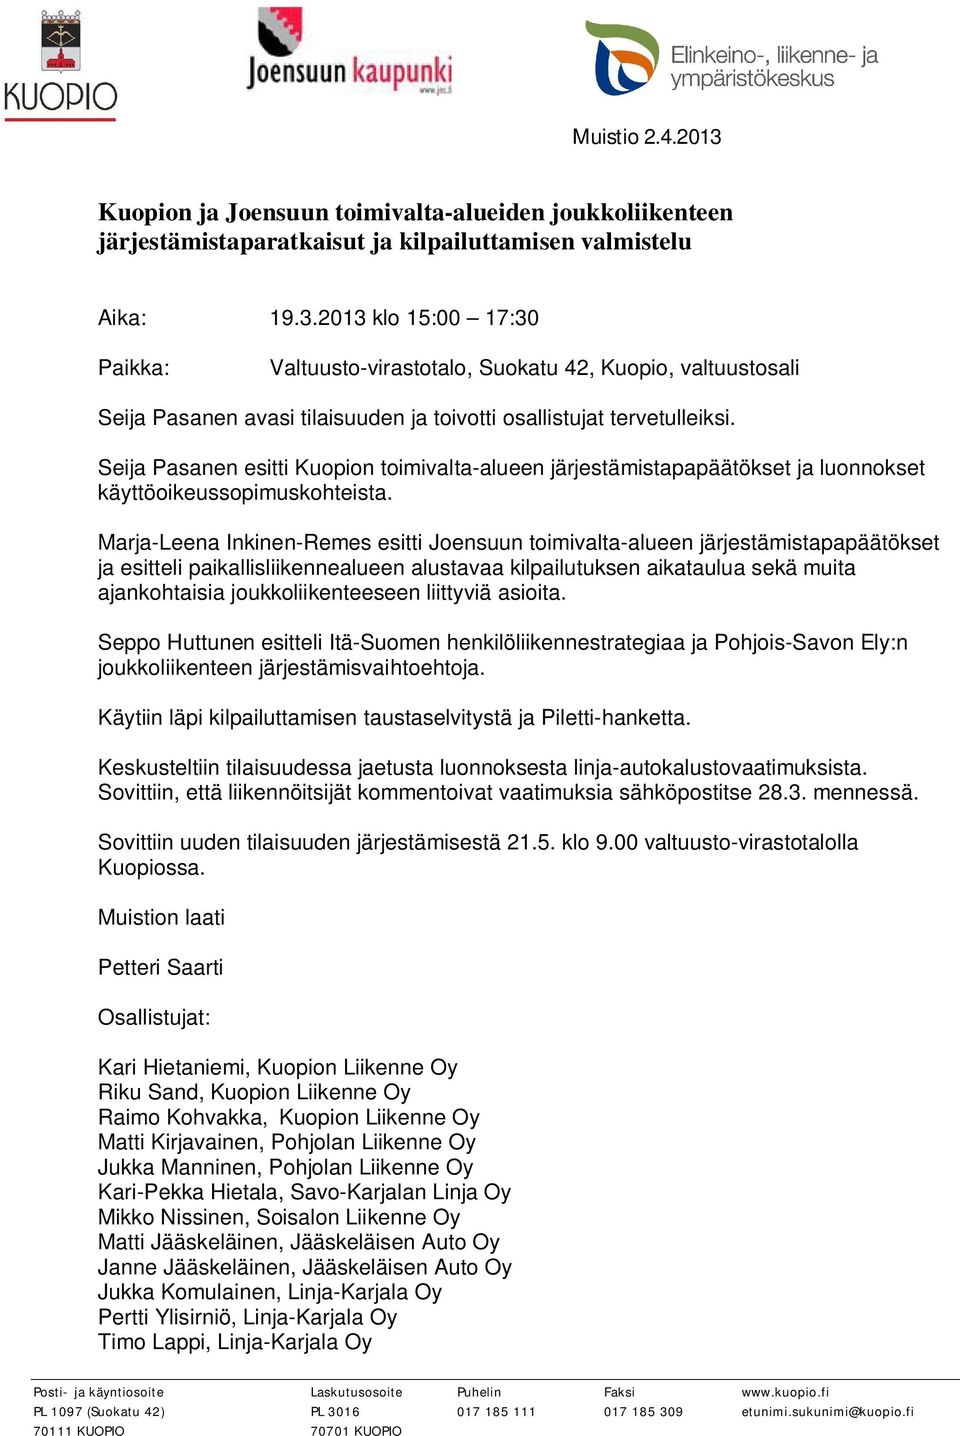 Seija Pasanen esitti Kuopion toimivalta-alueen järjestämistapapäätökset ja luonnokset käyttöoikeussopimuskohteista.